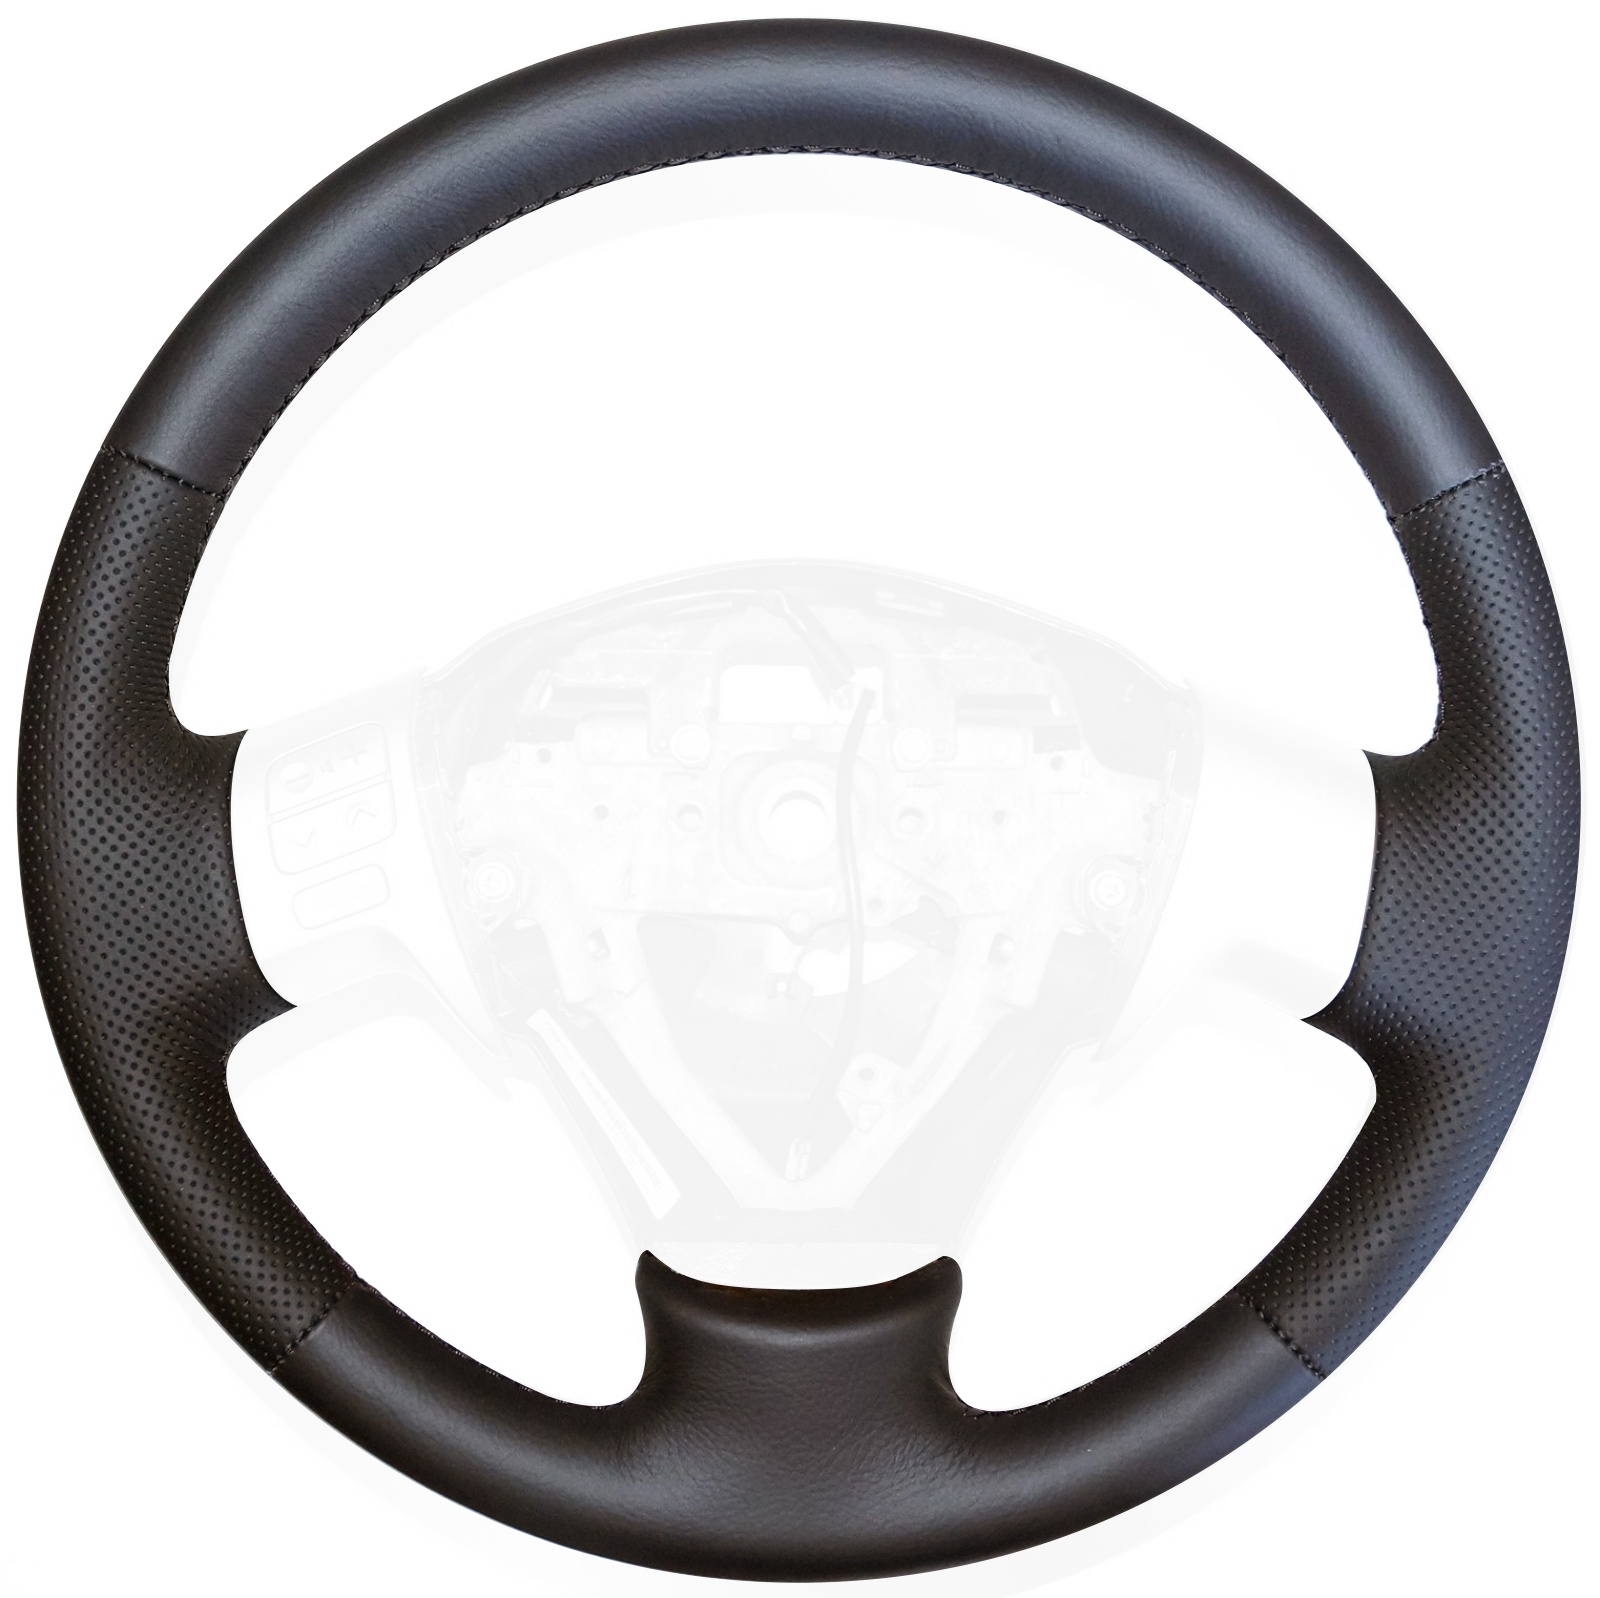 2008-13 Toyota Corolla steering wheel cover - v.1